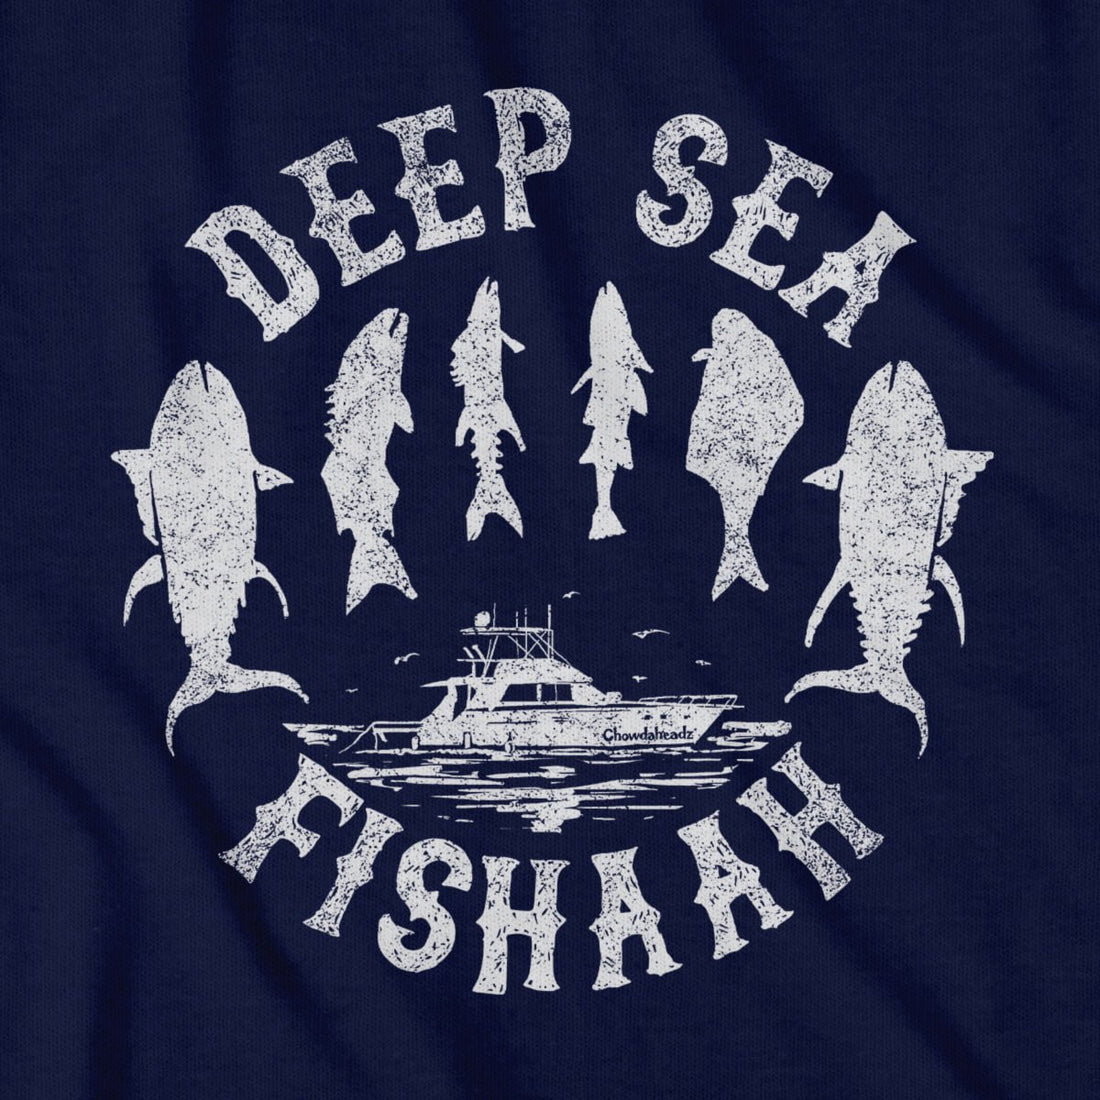 Deep Sea Fishahh T-Shirt - Chowdaheadz